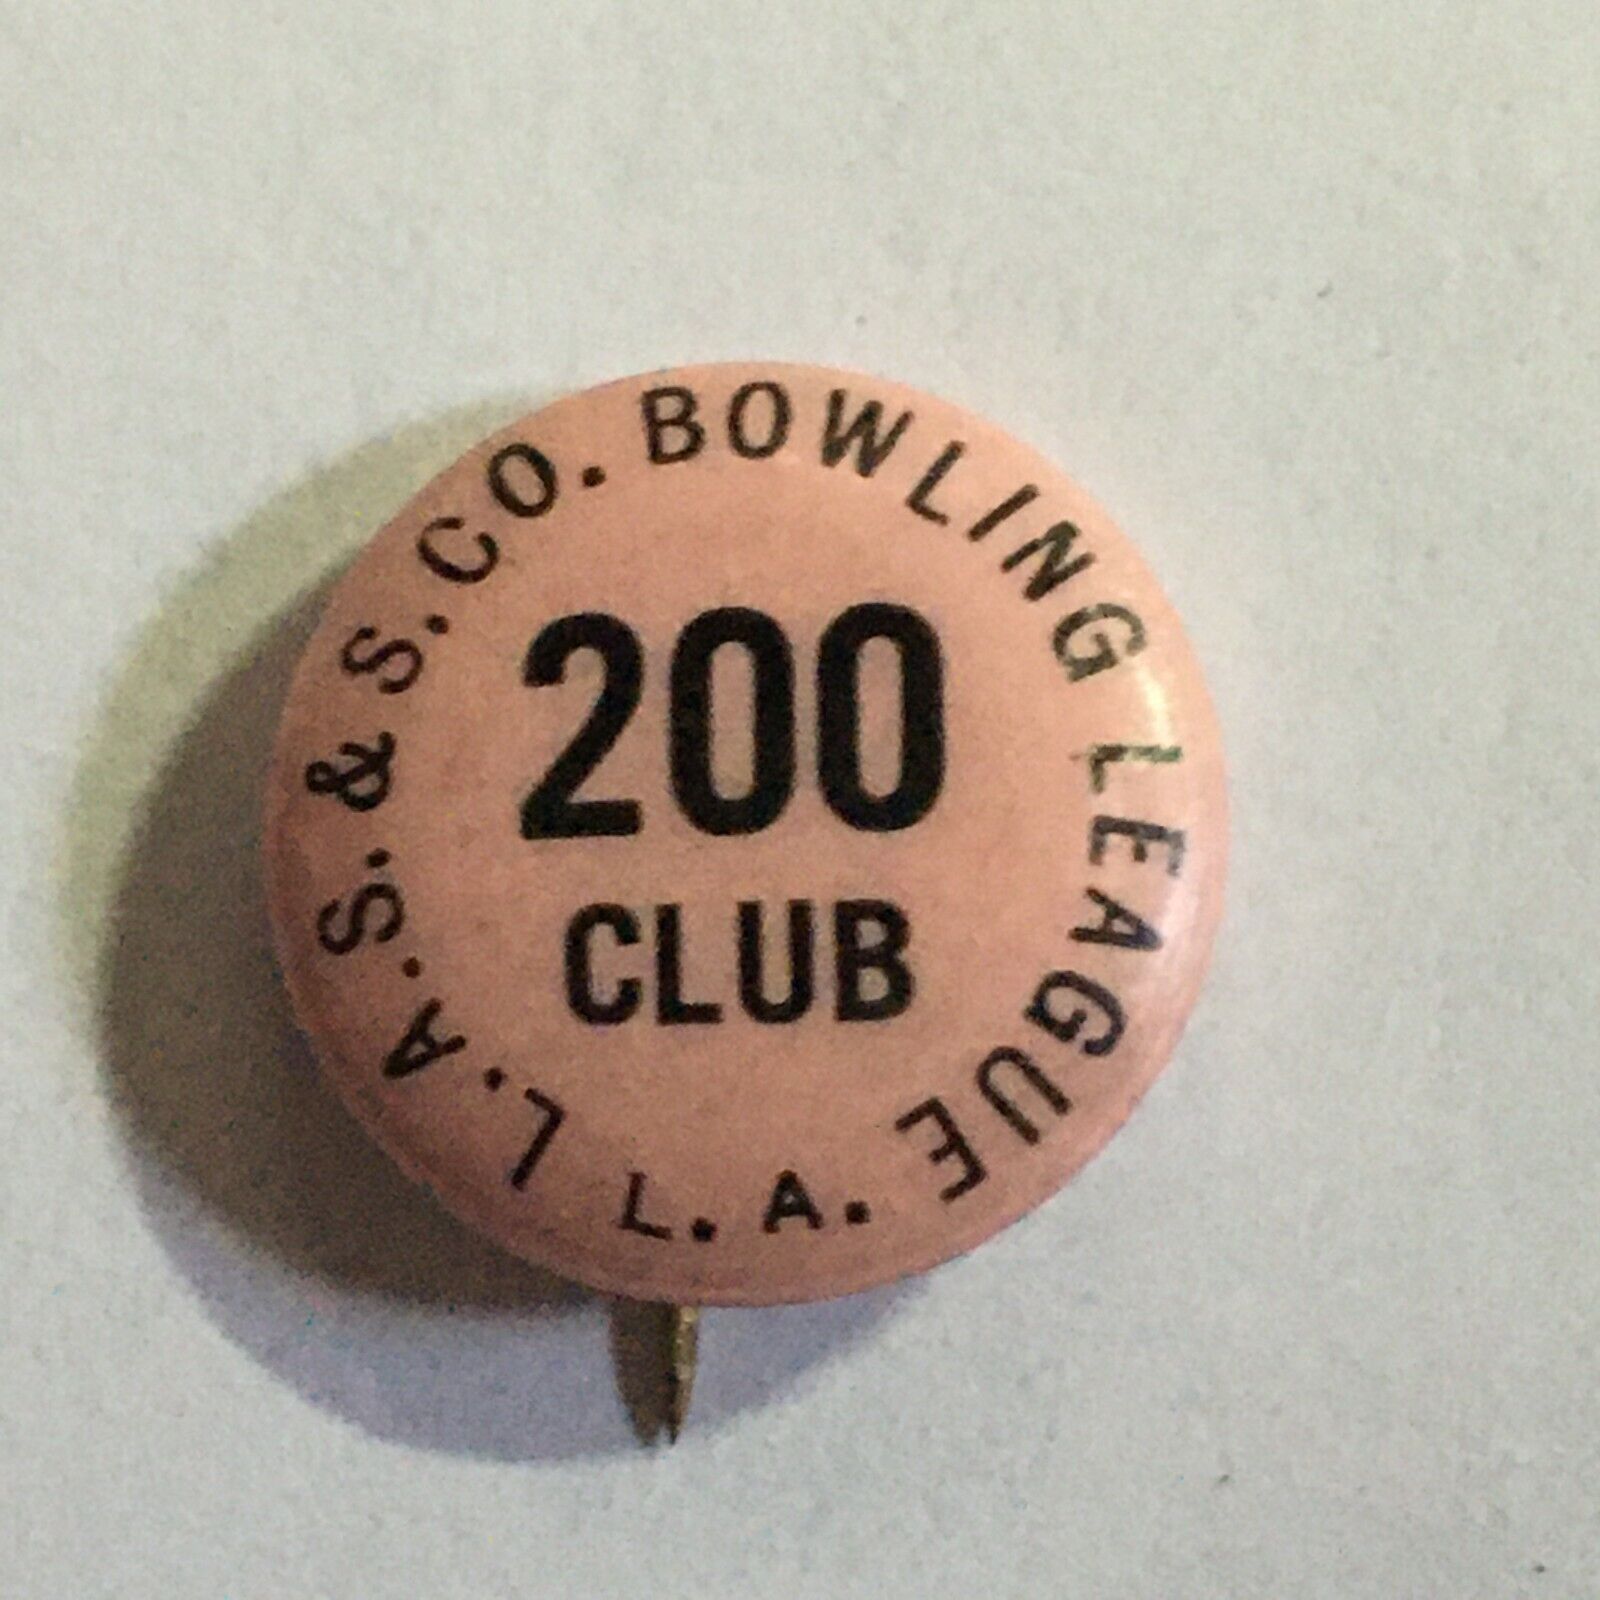 L.A.S.& S. Co. Bowling League 200 Club vintage pinback button--5/8 inch